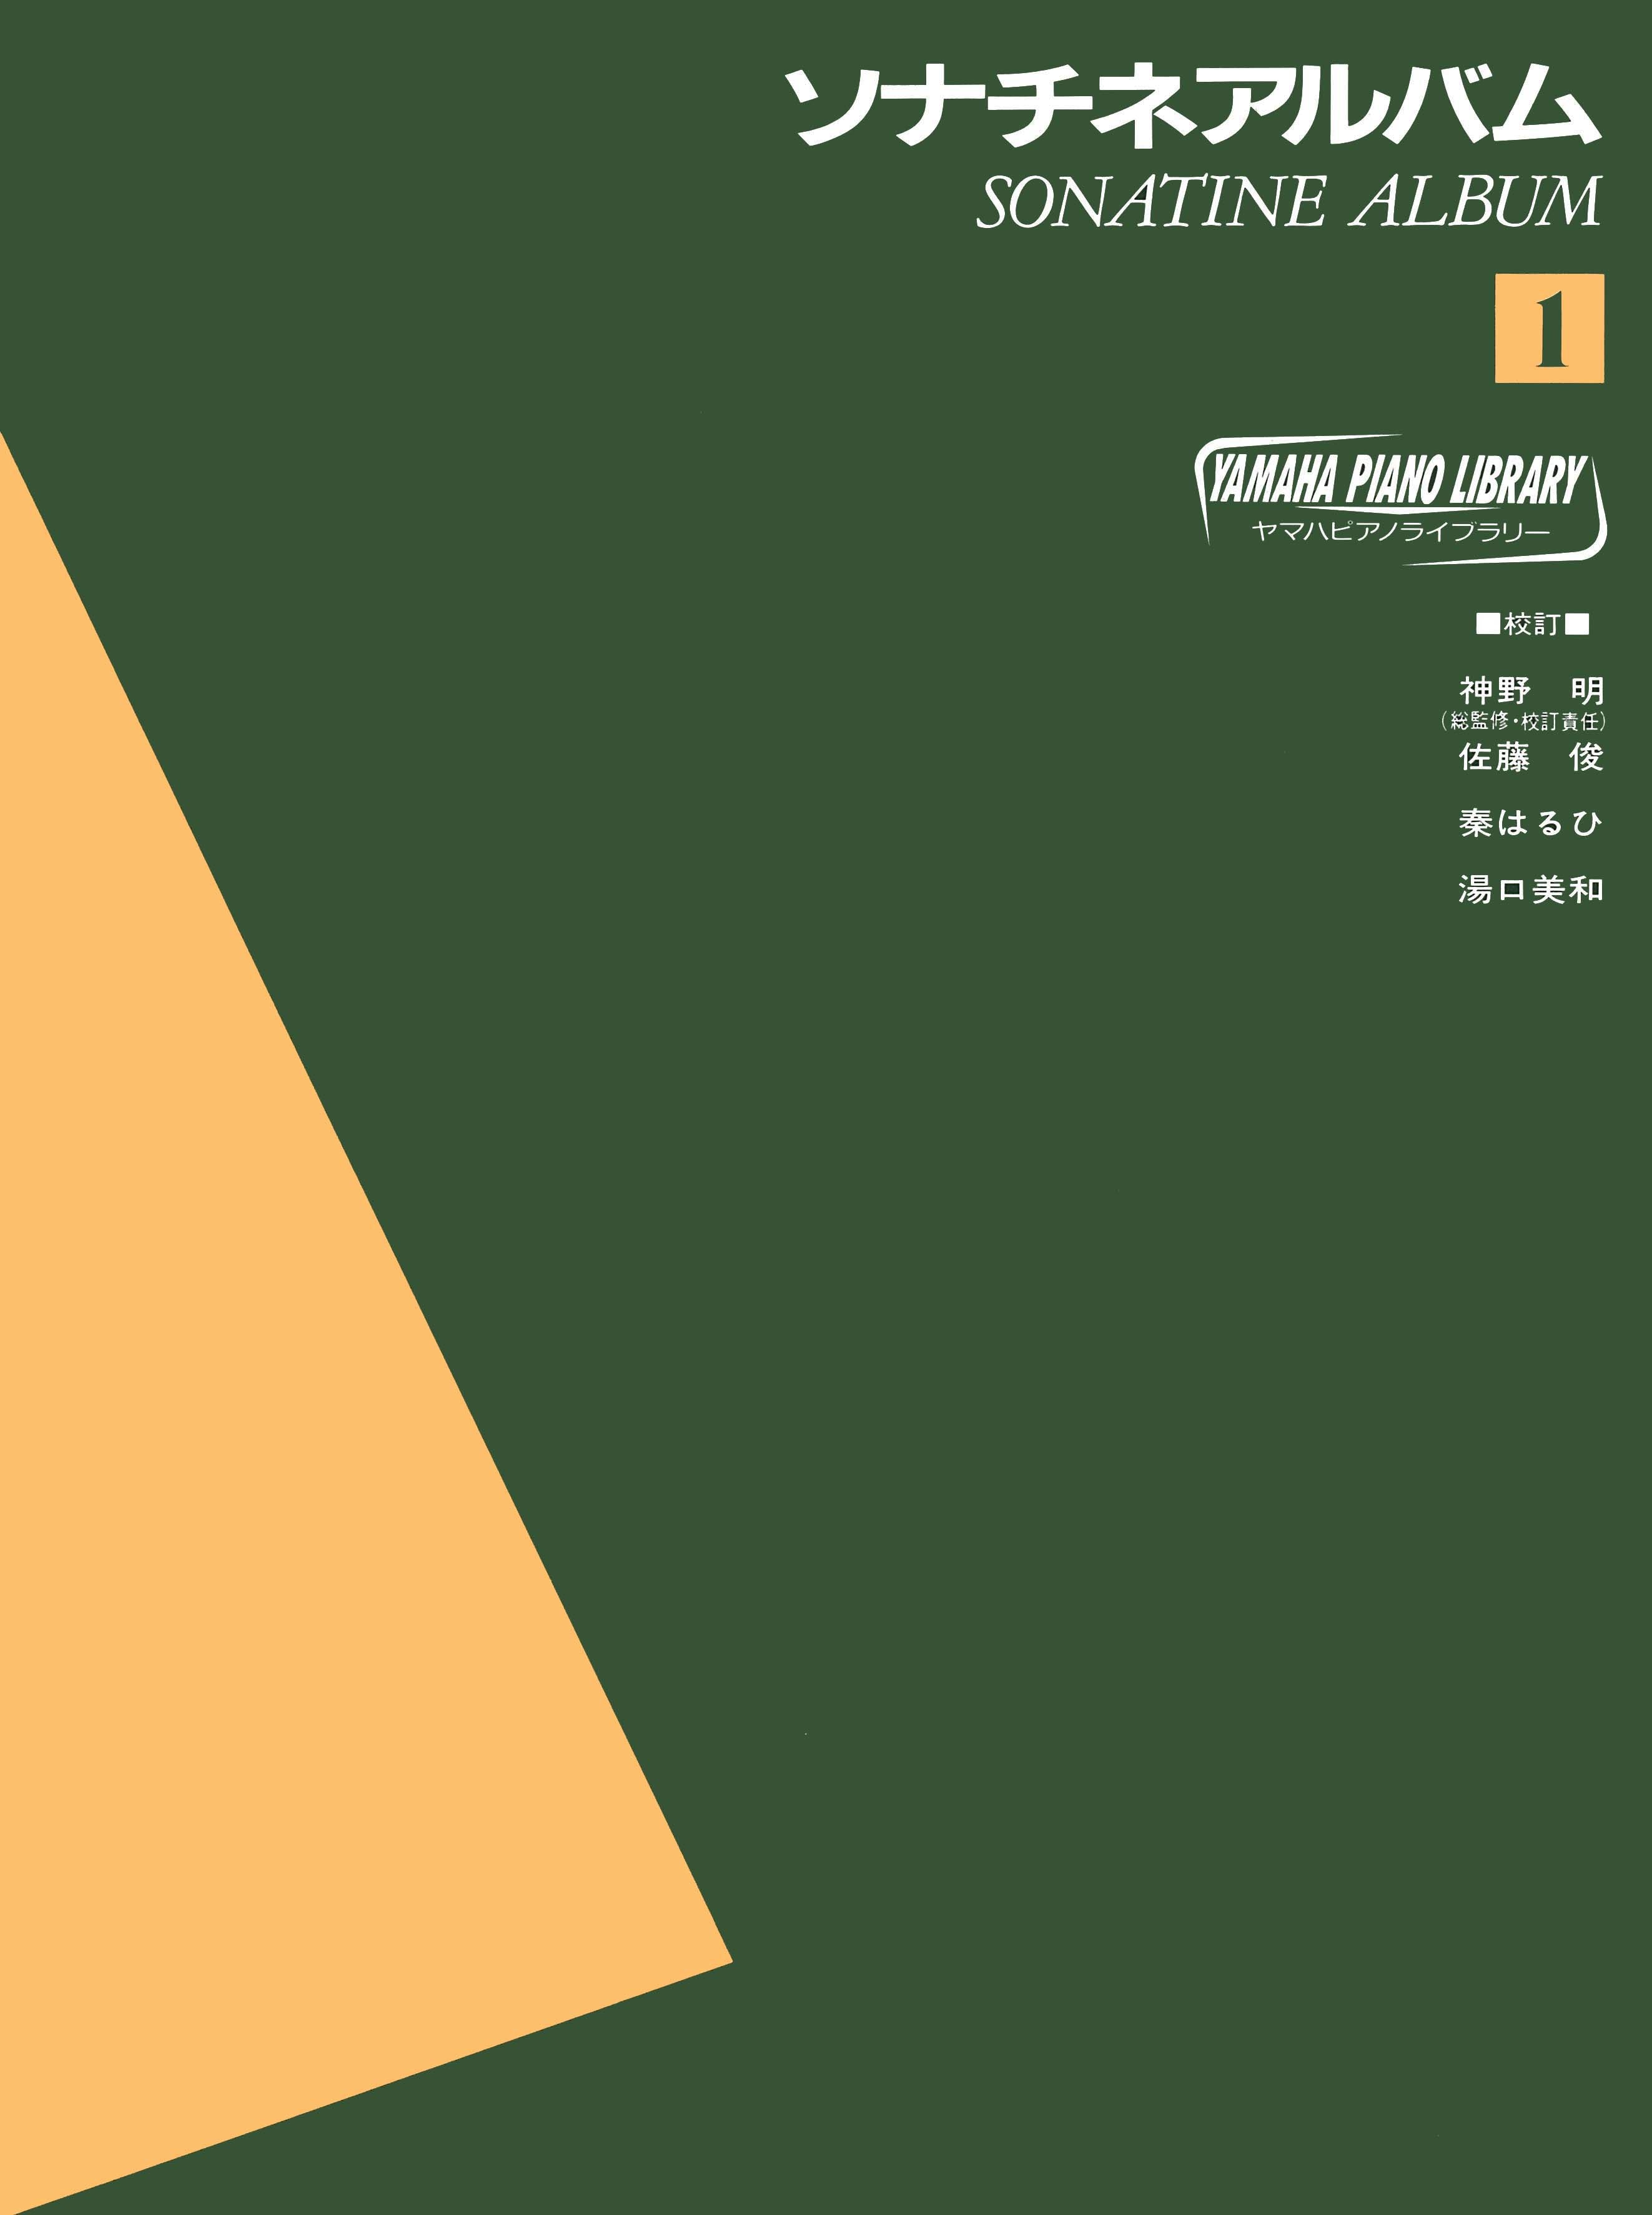 ヤマハピアノライブラリー ソナチネアルバム1 | ヤマハの楽譜通販サイト Sheet Music Store